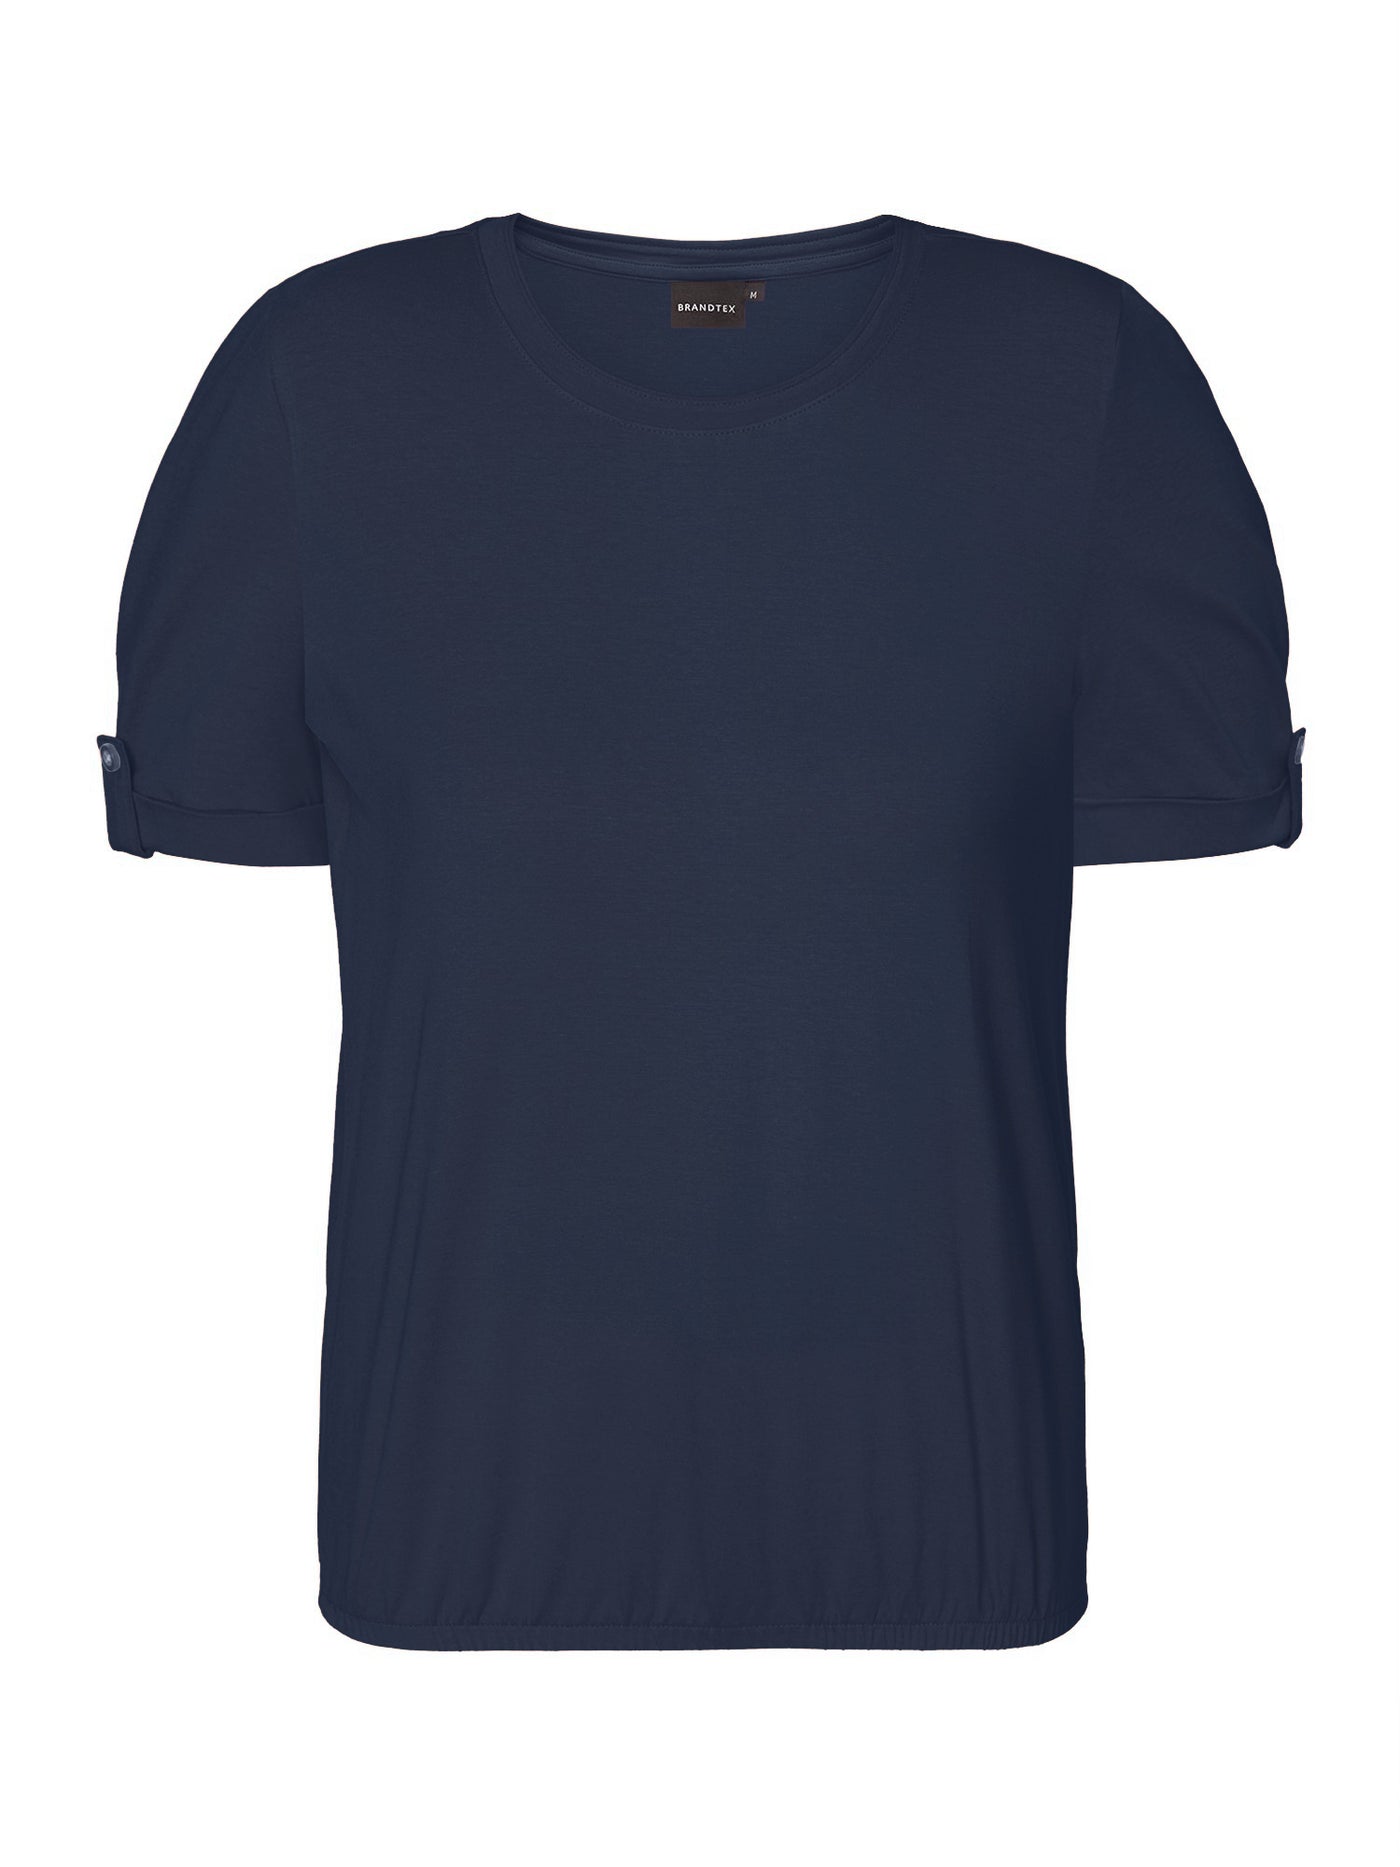 T-shirt - Navy